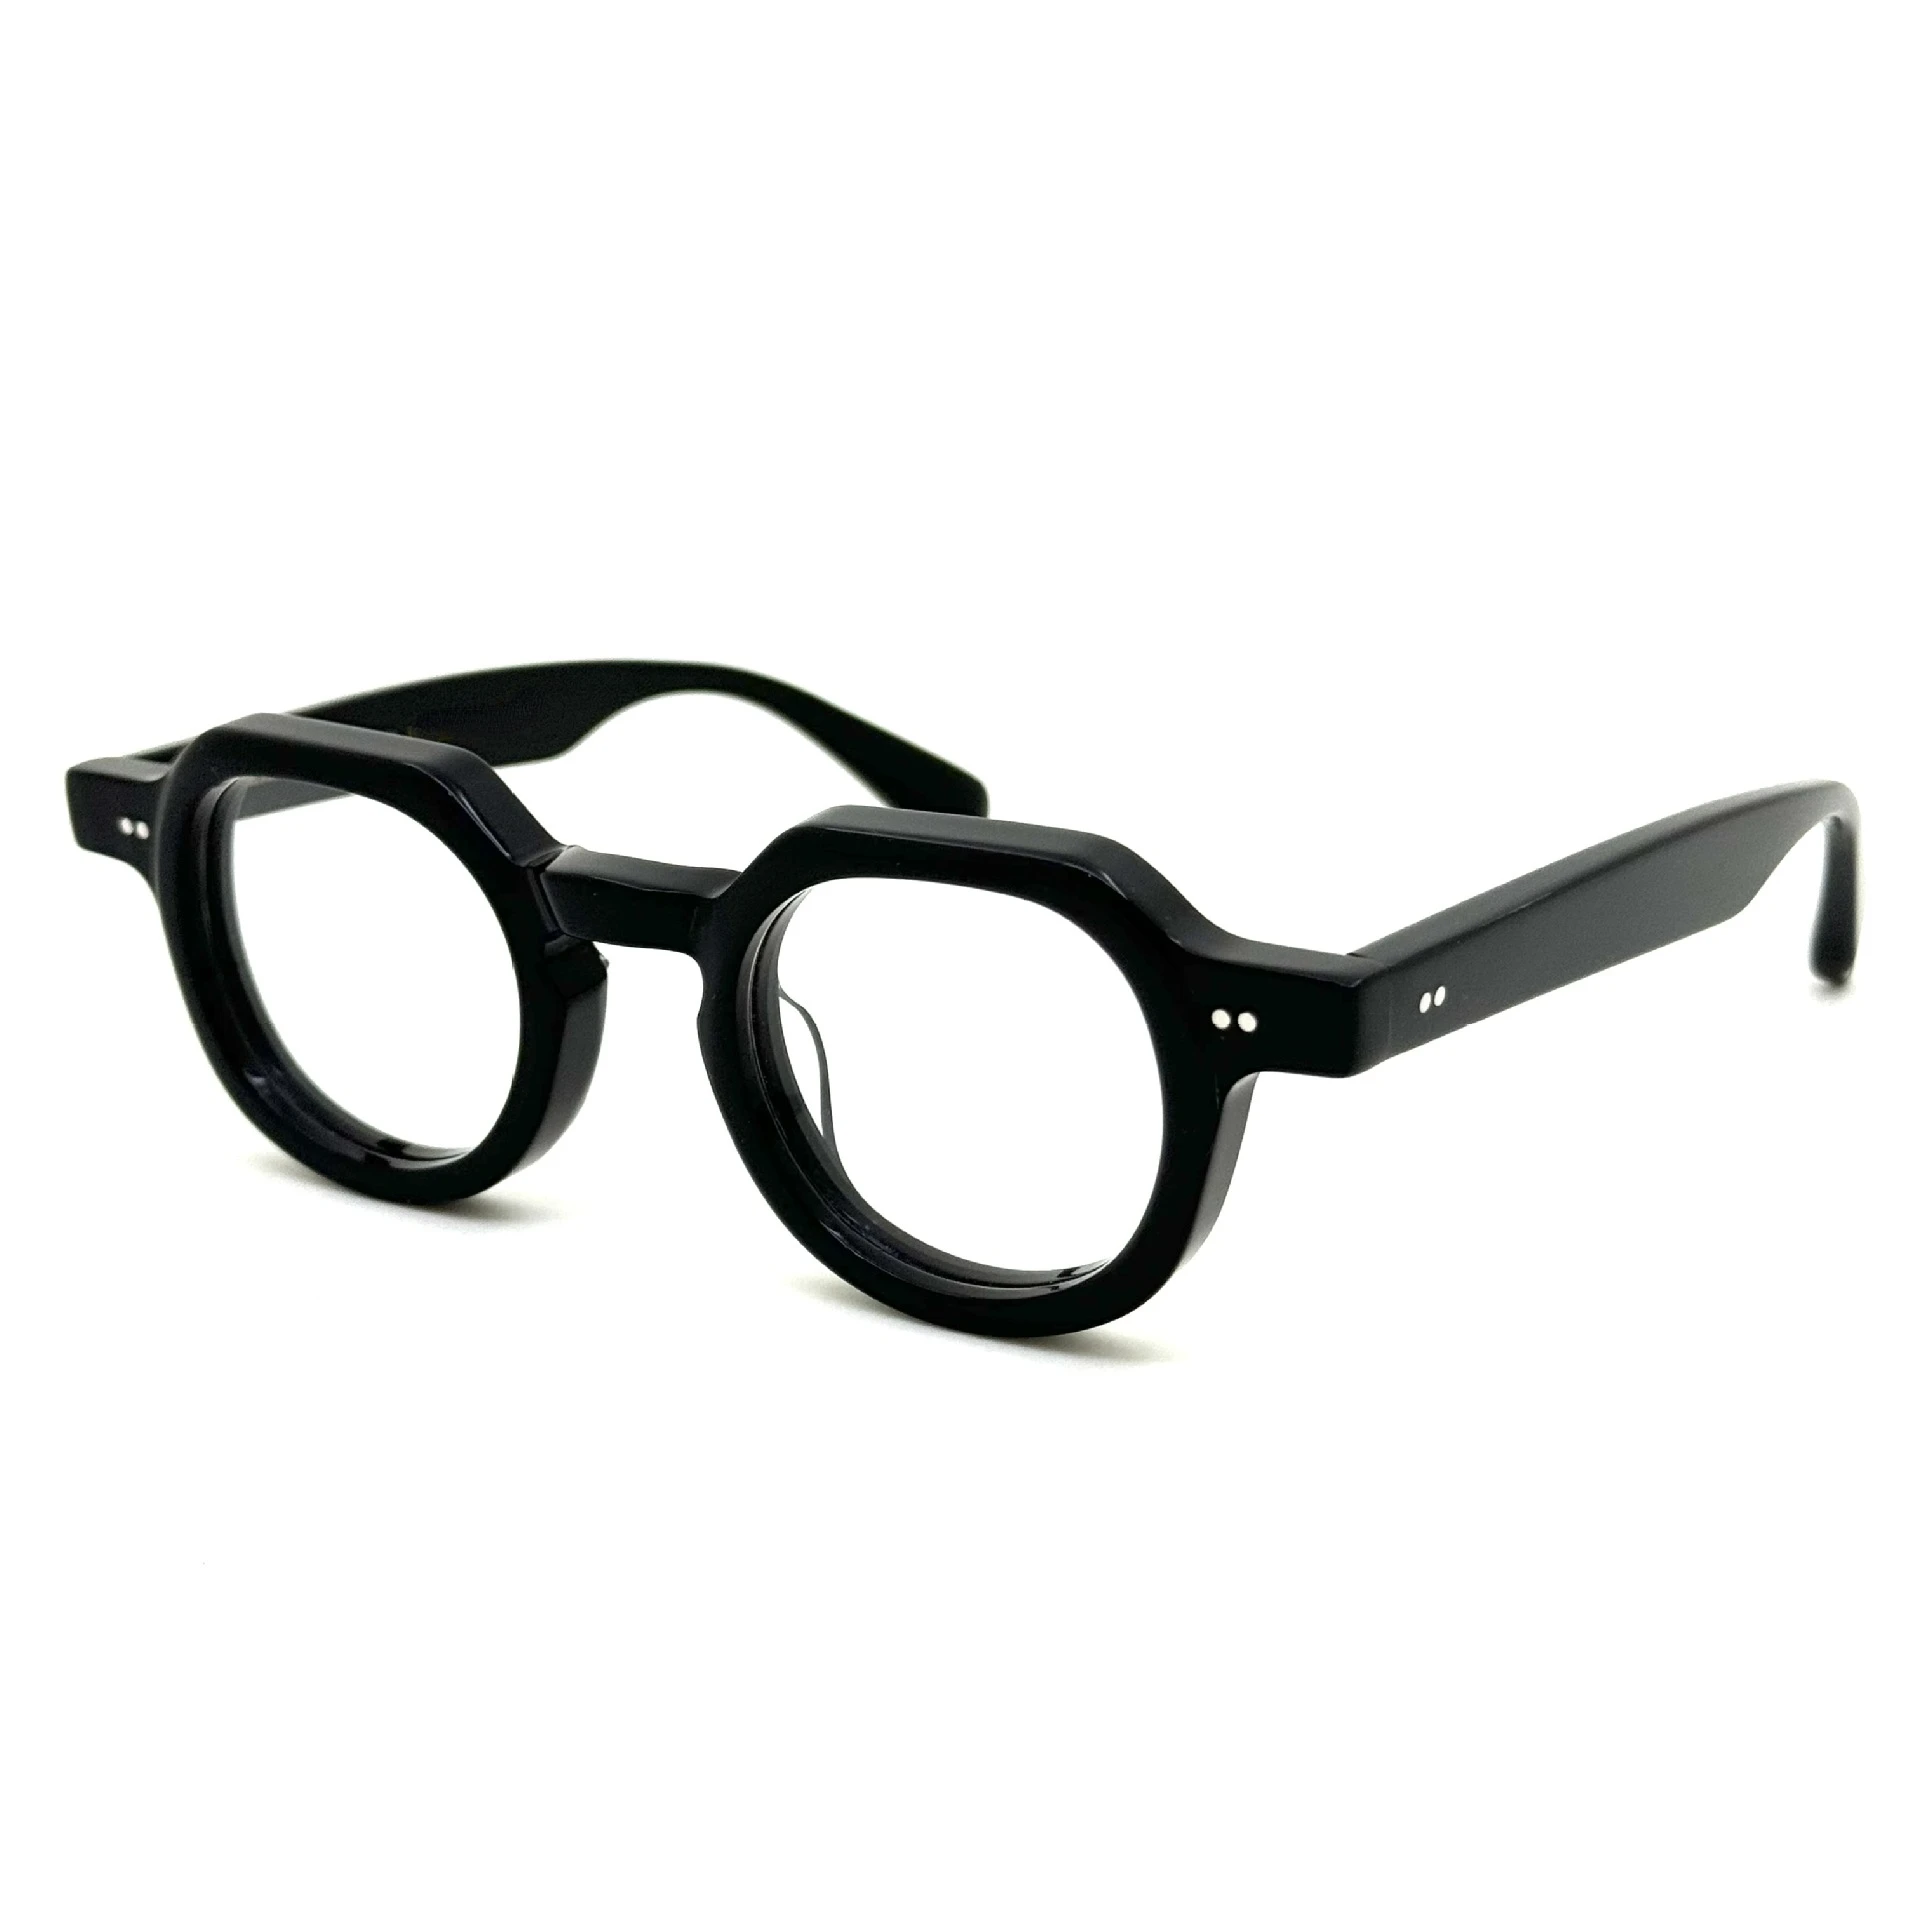 

Japaneses Style Quality Acetate Polygon Glasses Frame For Men Women Optical Myopia Reading Designer Eyeglasses Prescription Lens